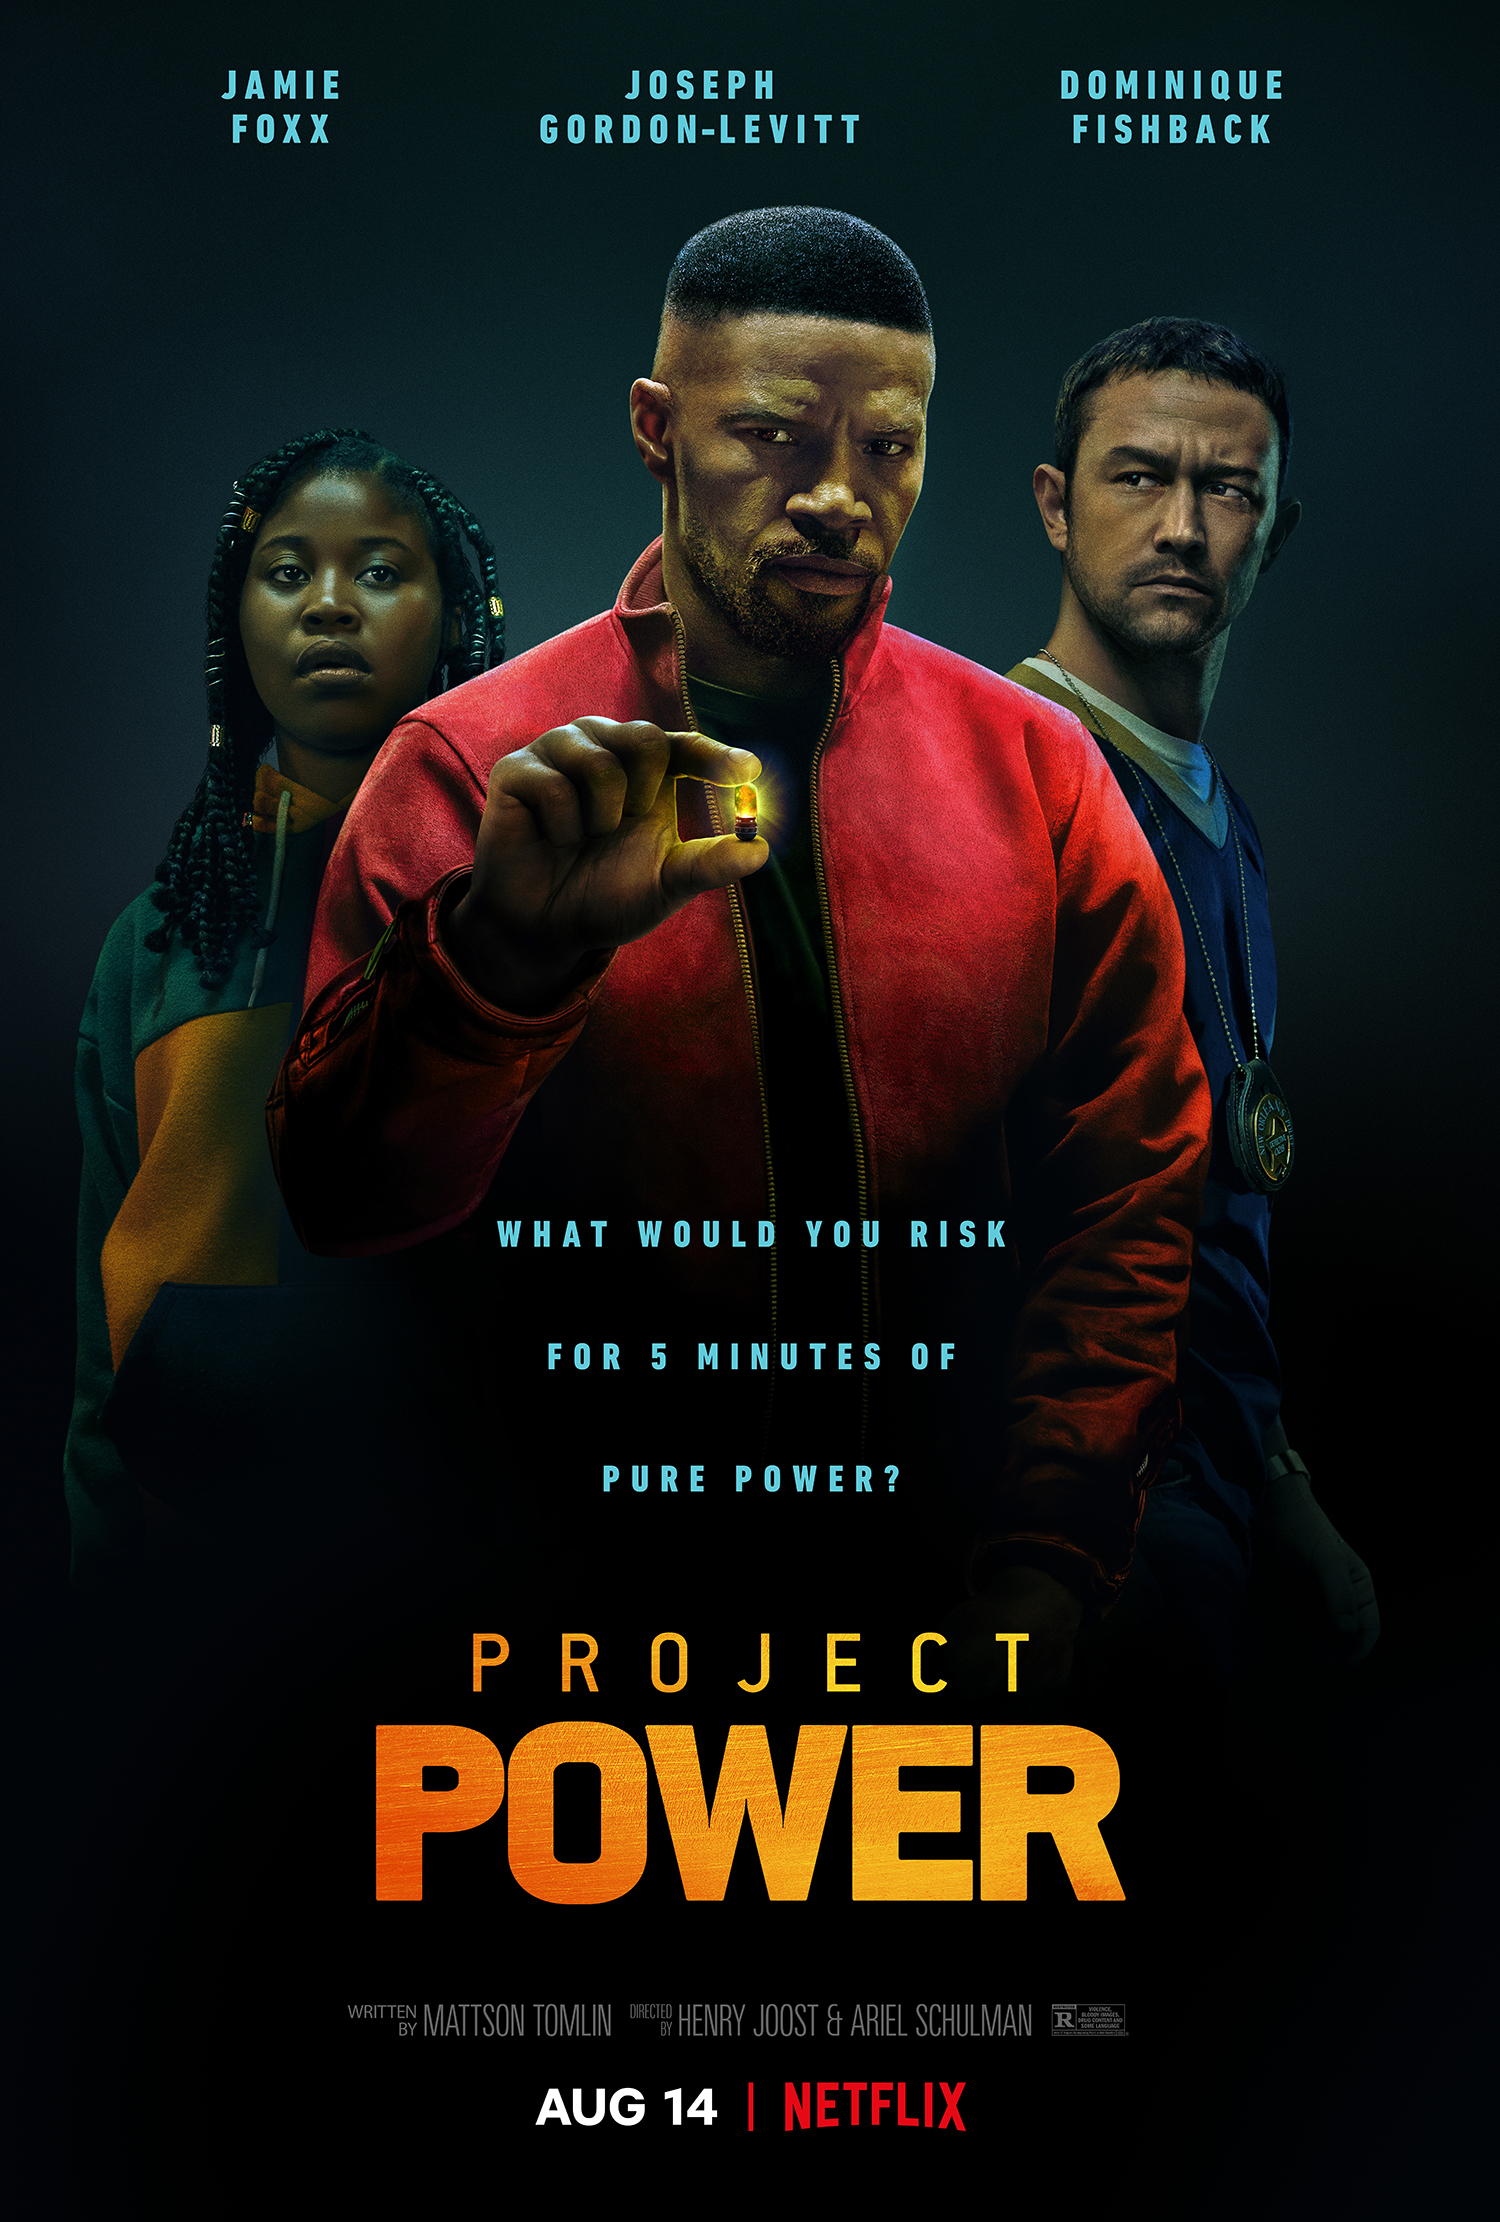 New Movie: Project Power Starring Jamie Foxx